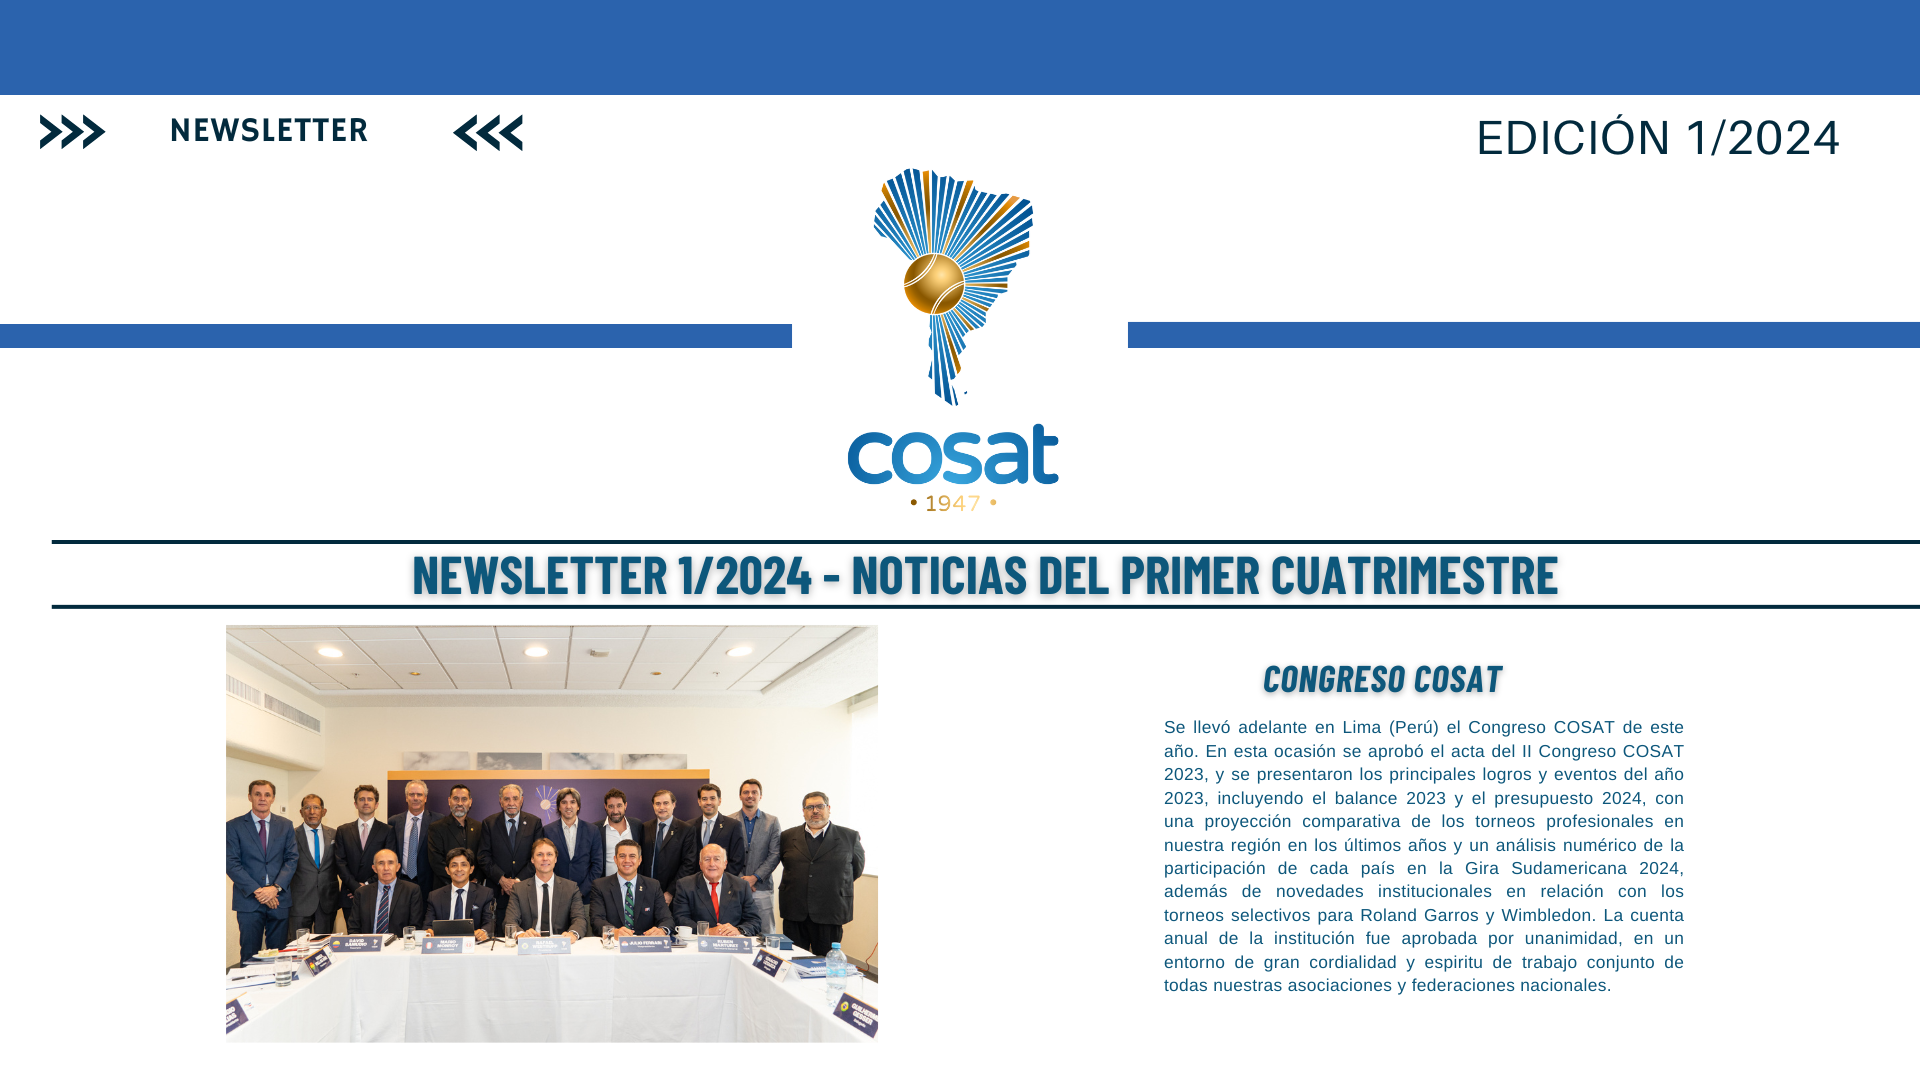 Descubran el nuevo Newsletter de COSAT